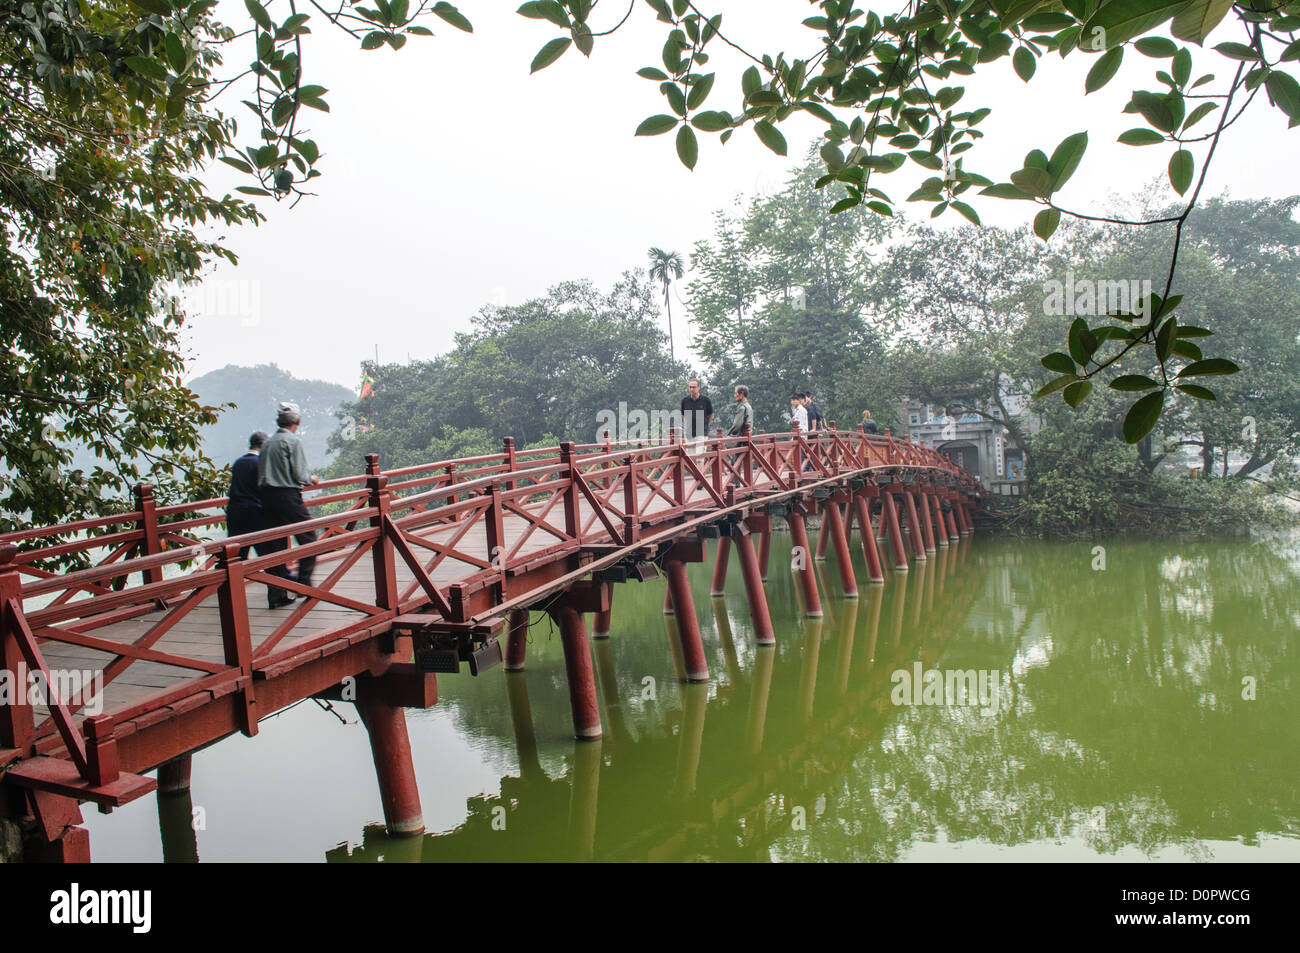 HANOI, Vietnam - Le Pont de Huc avec les touristes. Peint en rouge, le pont de bois s'associe à la rive nord du lac avec l'île de jade et le Temple de la montagne de jade (Ngoc Son)). Banque D'Images